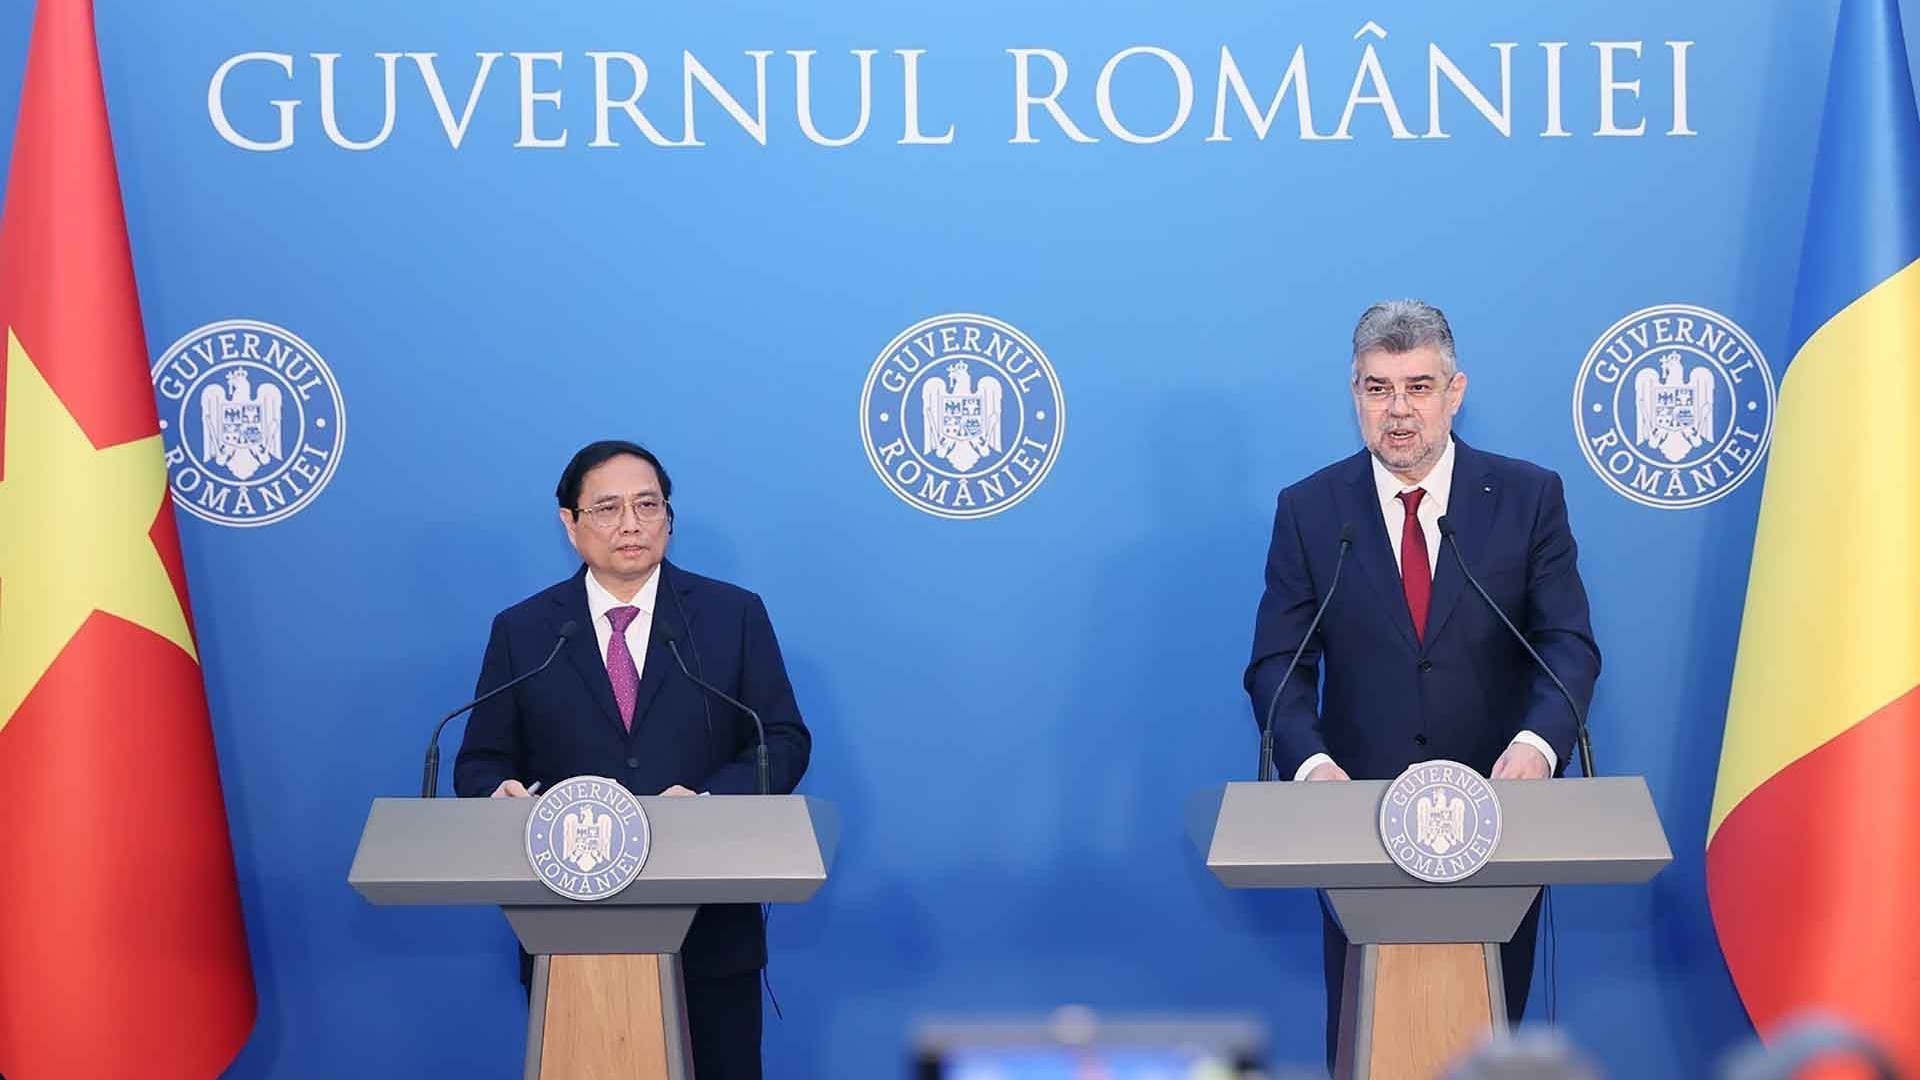 Tạo xung lực mới cho quan hệ Việt Nam-Romania ngày càng đi vào chiều sâu, hiệu quả và thực chất